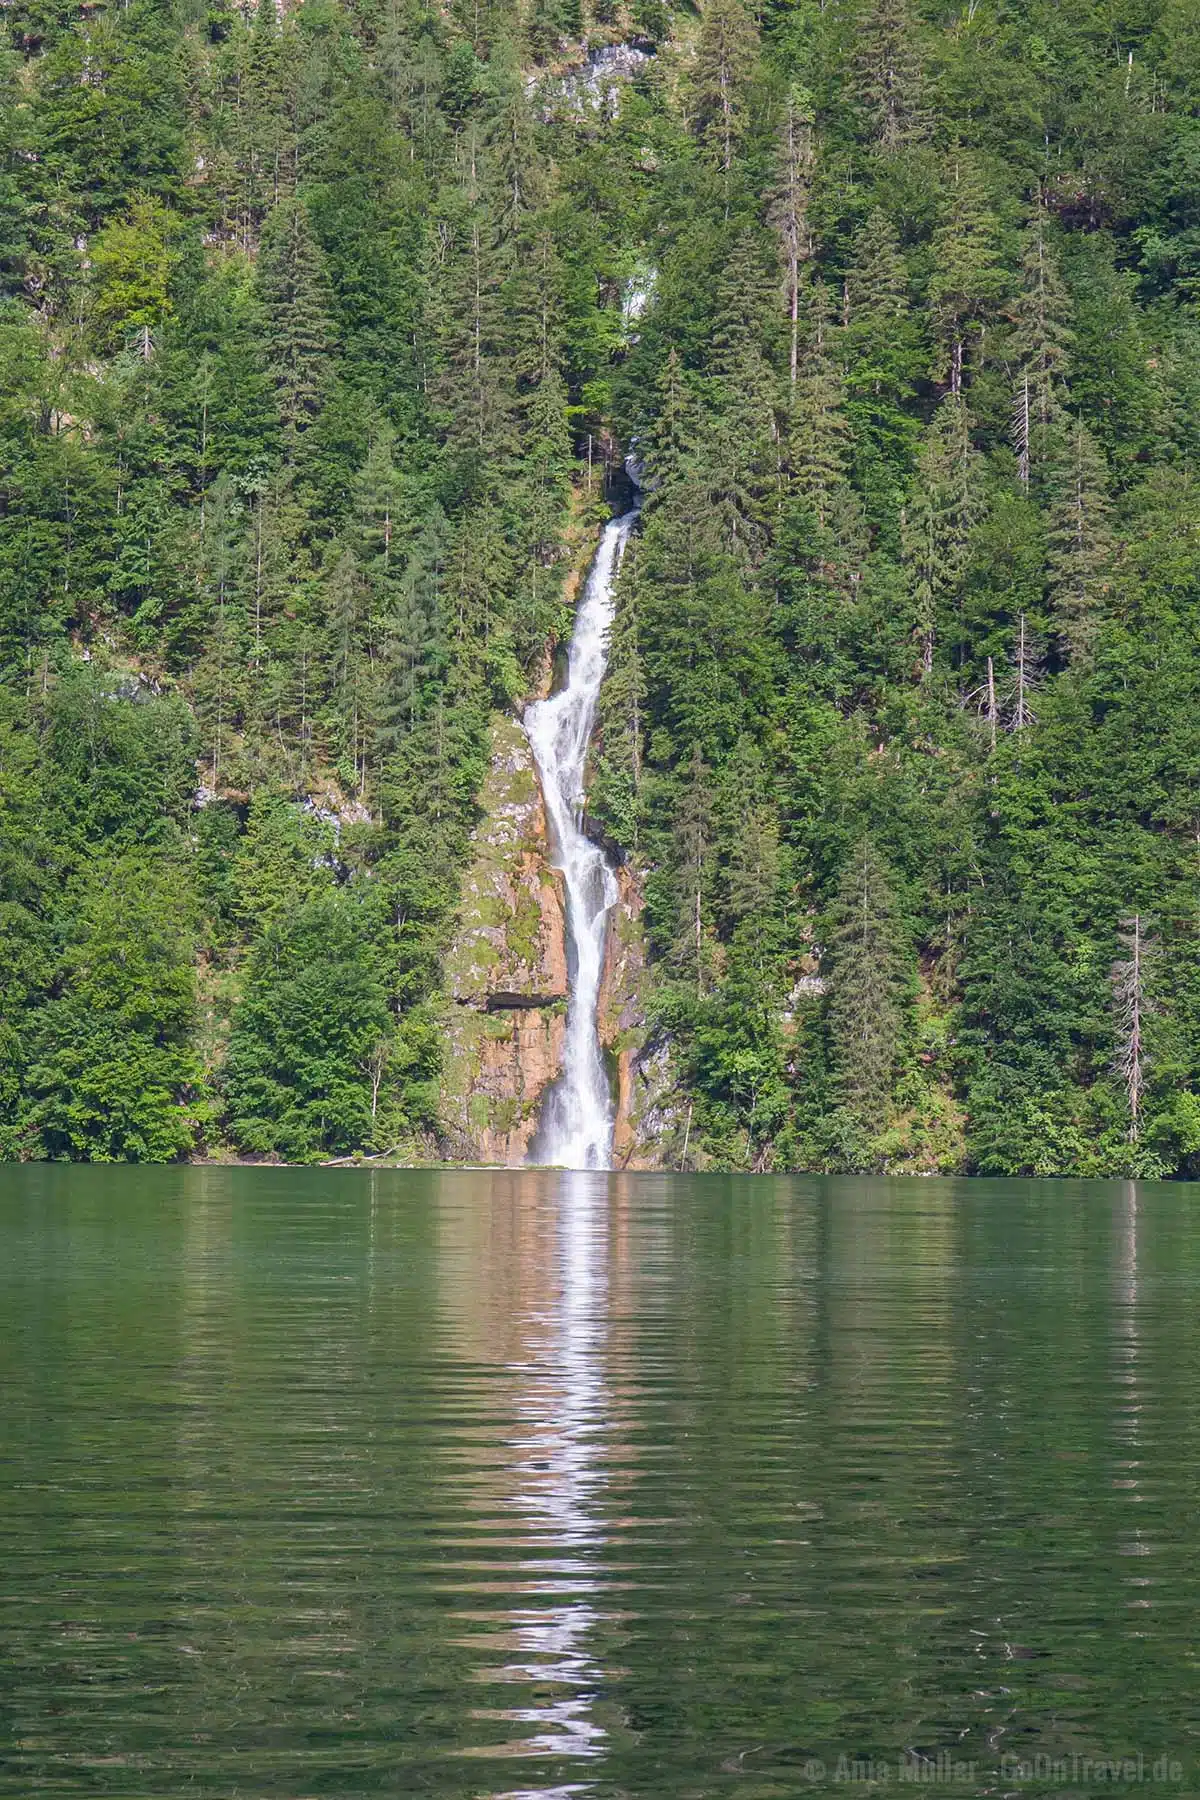 Einer der spektakulärsten Wasserfälle in Bayern - der Schrainbach Wasserfall am Königssee